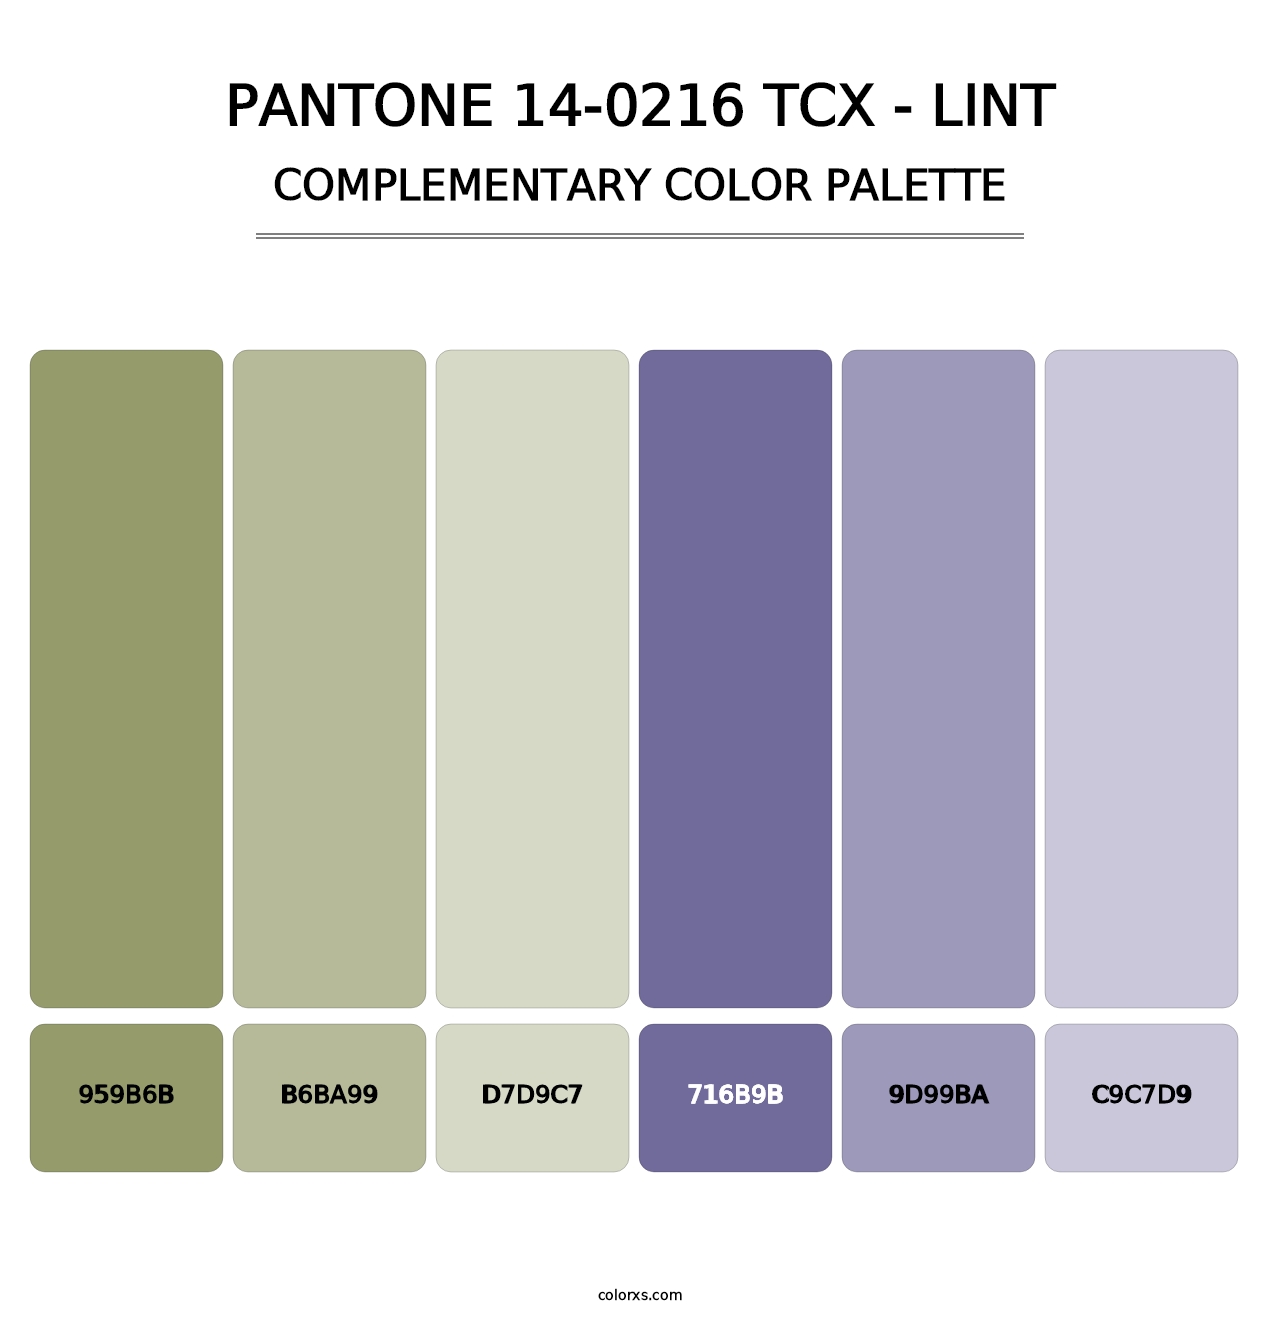 PANTONE 14-0216 TCX - Lint - Complementary Color Palette